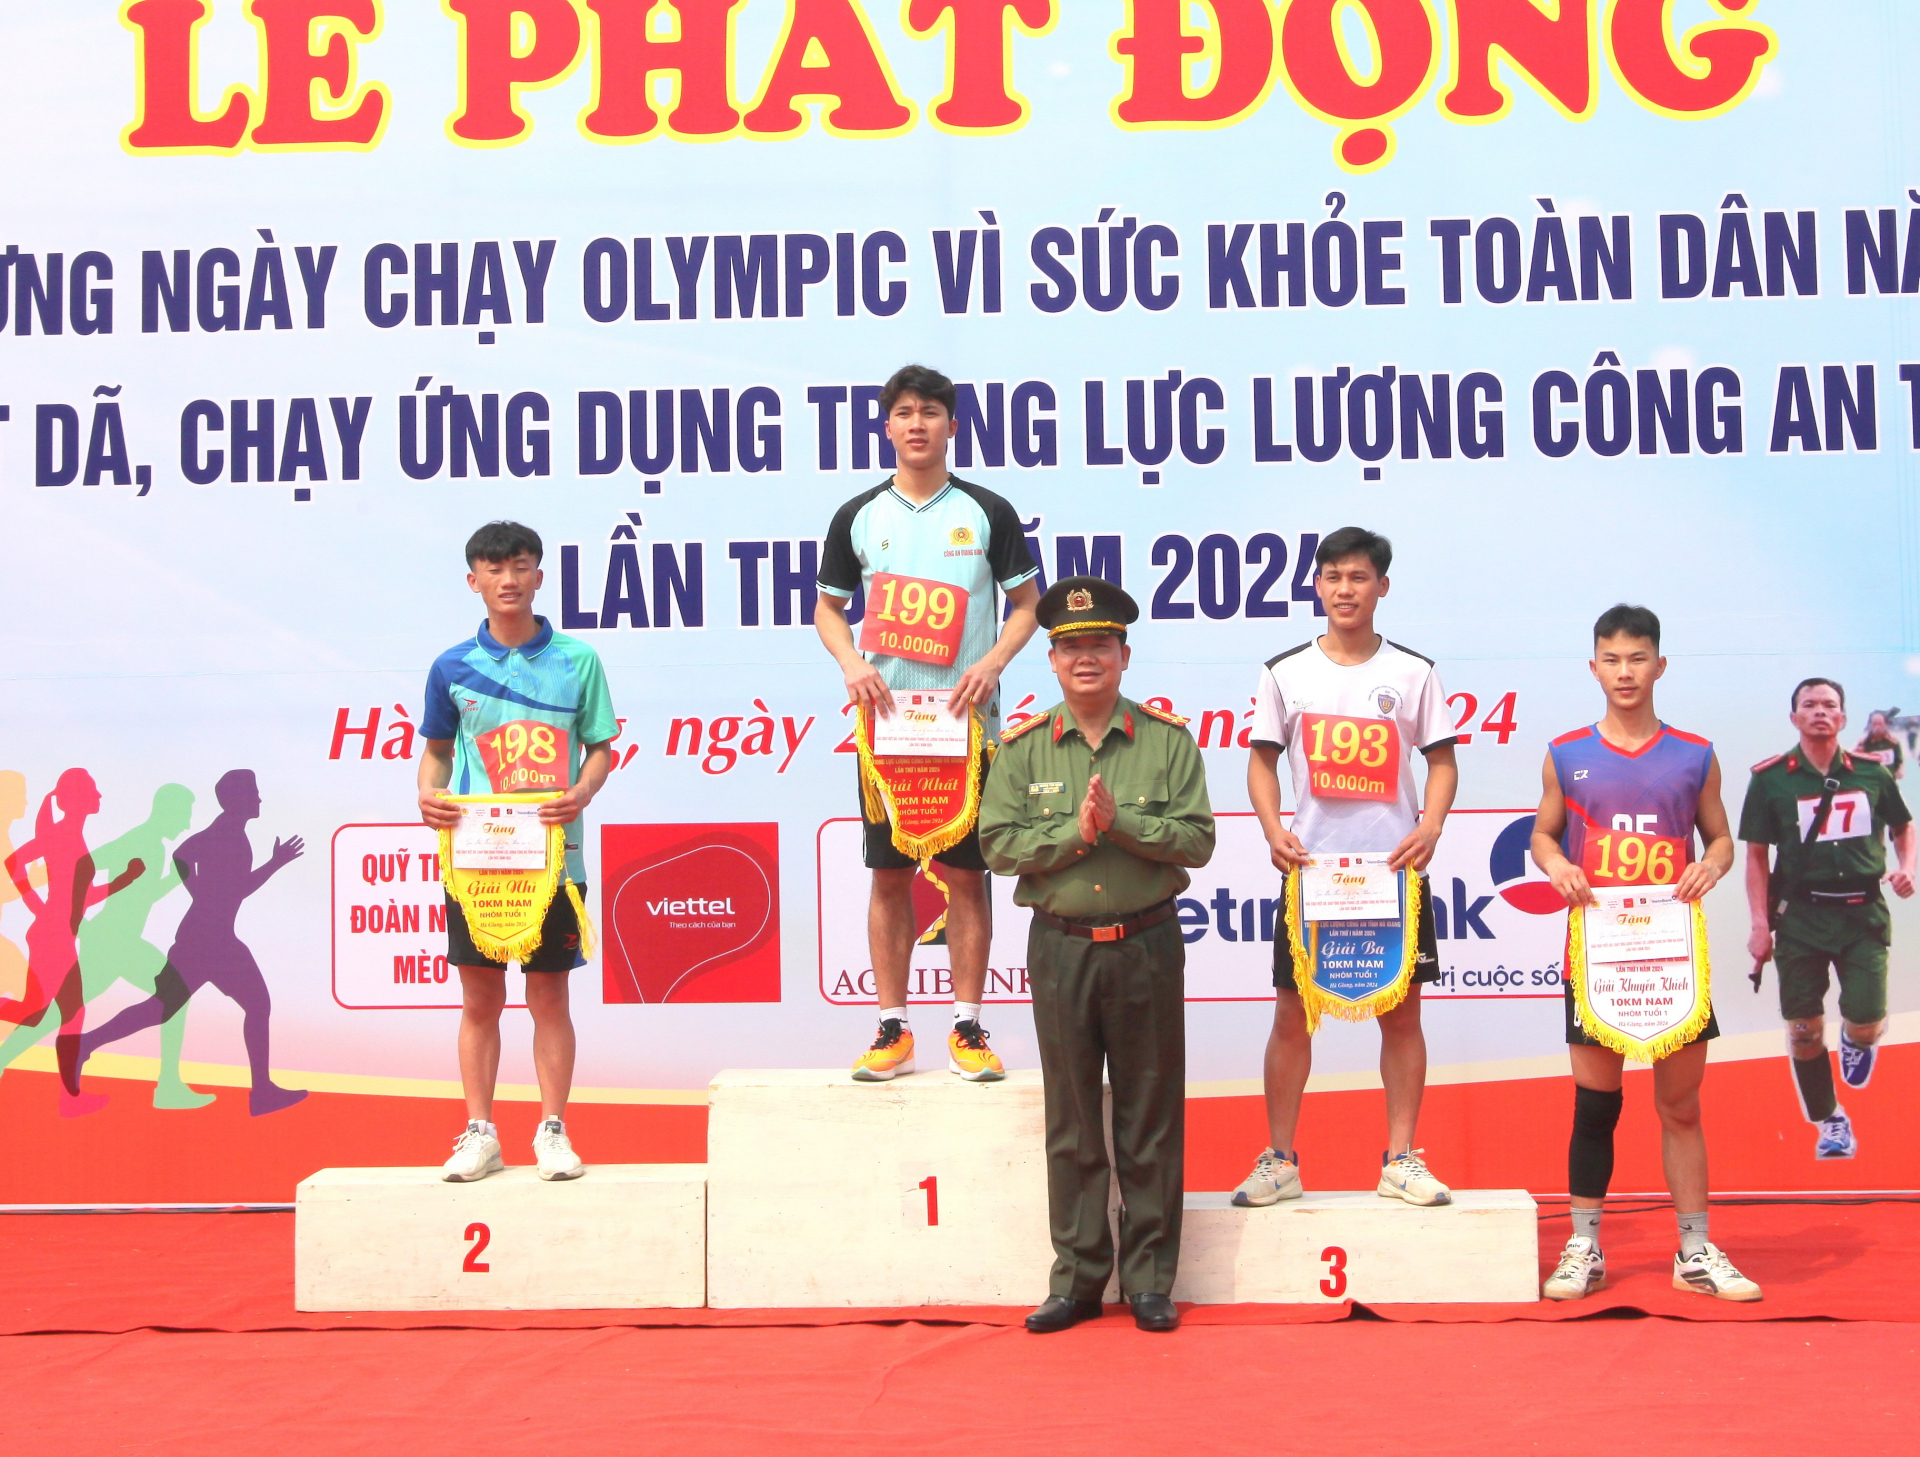 Ban tổ chức trao giải cho nội dung chạy việt dã 10km nam nhóm tuổi 1.